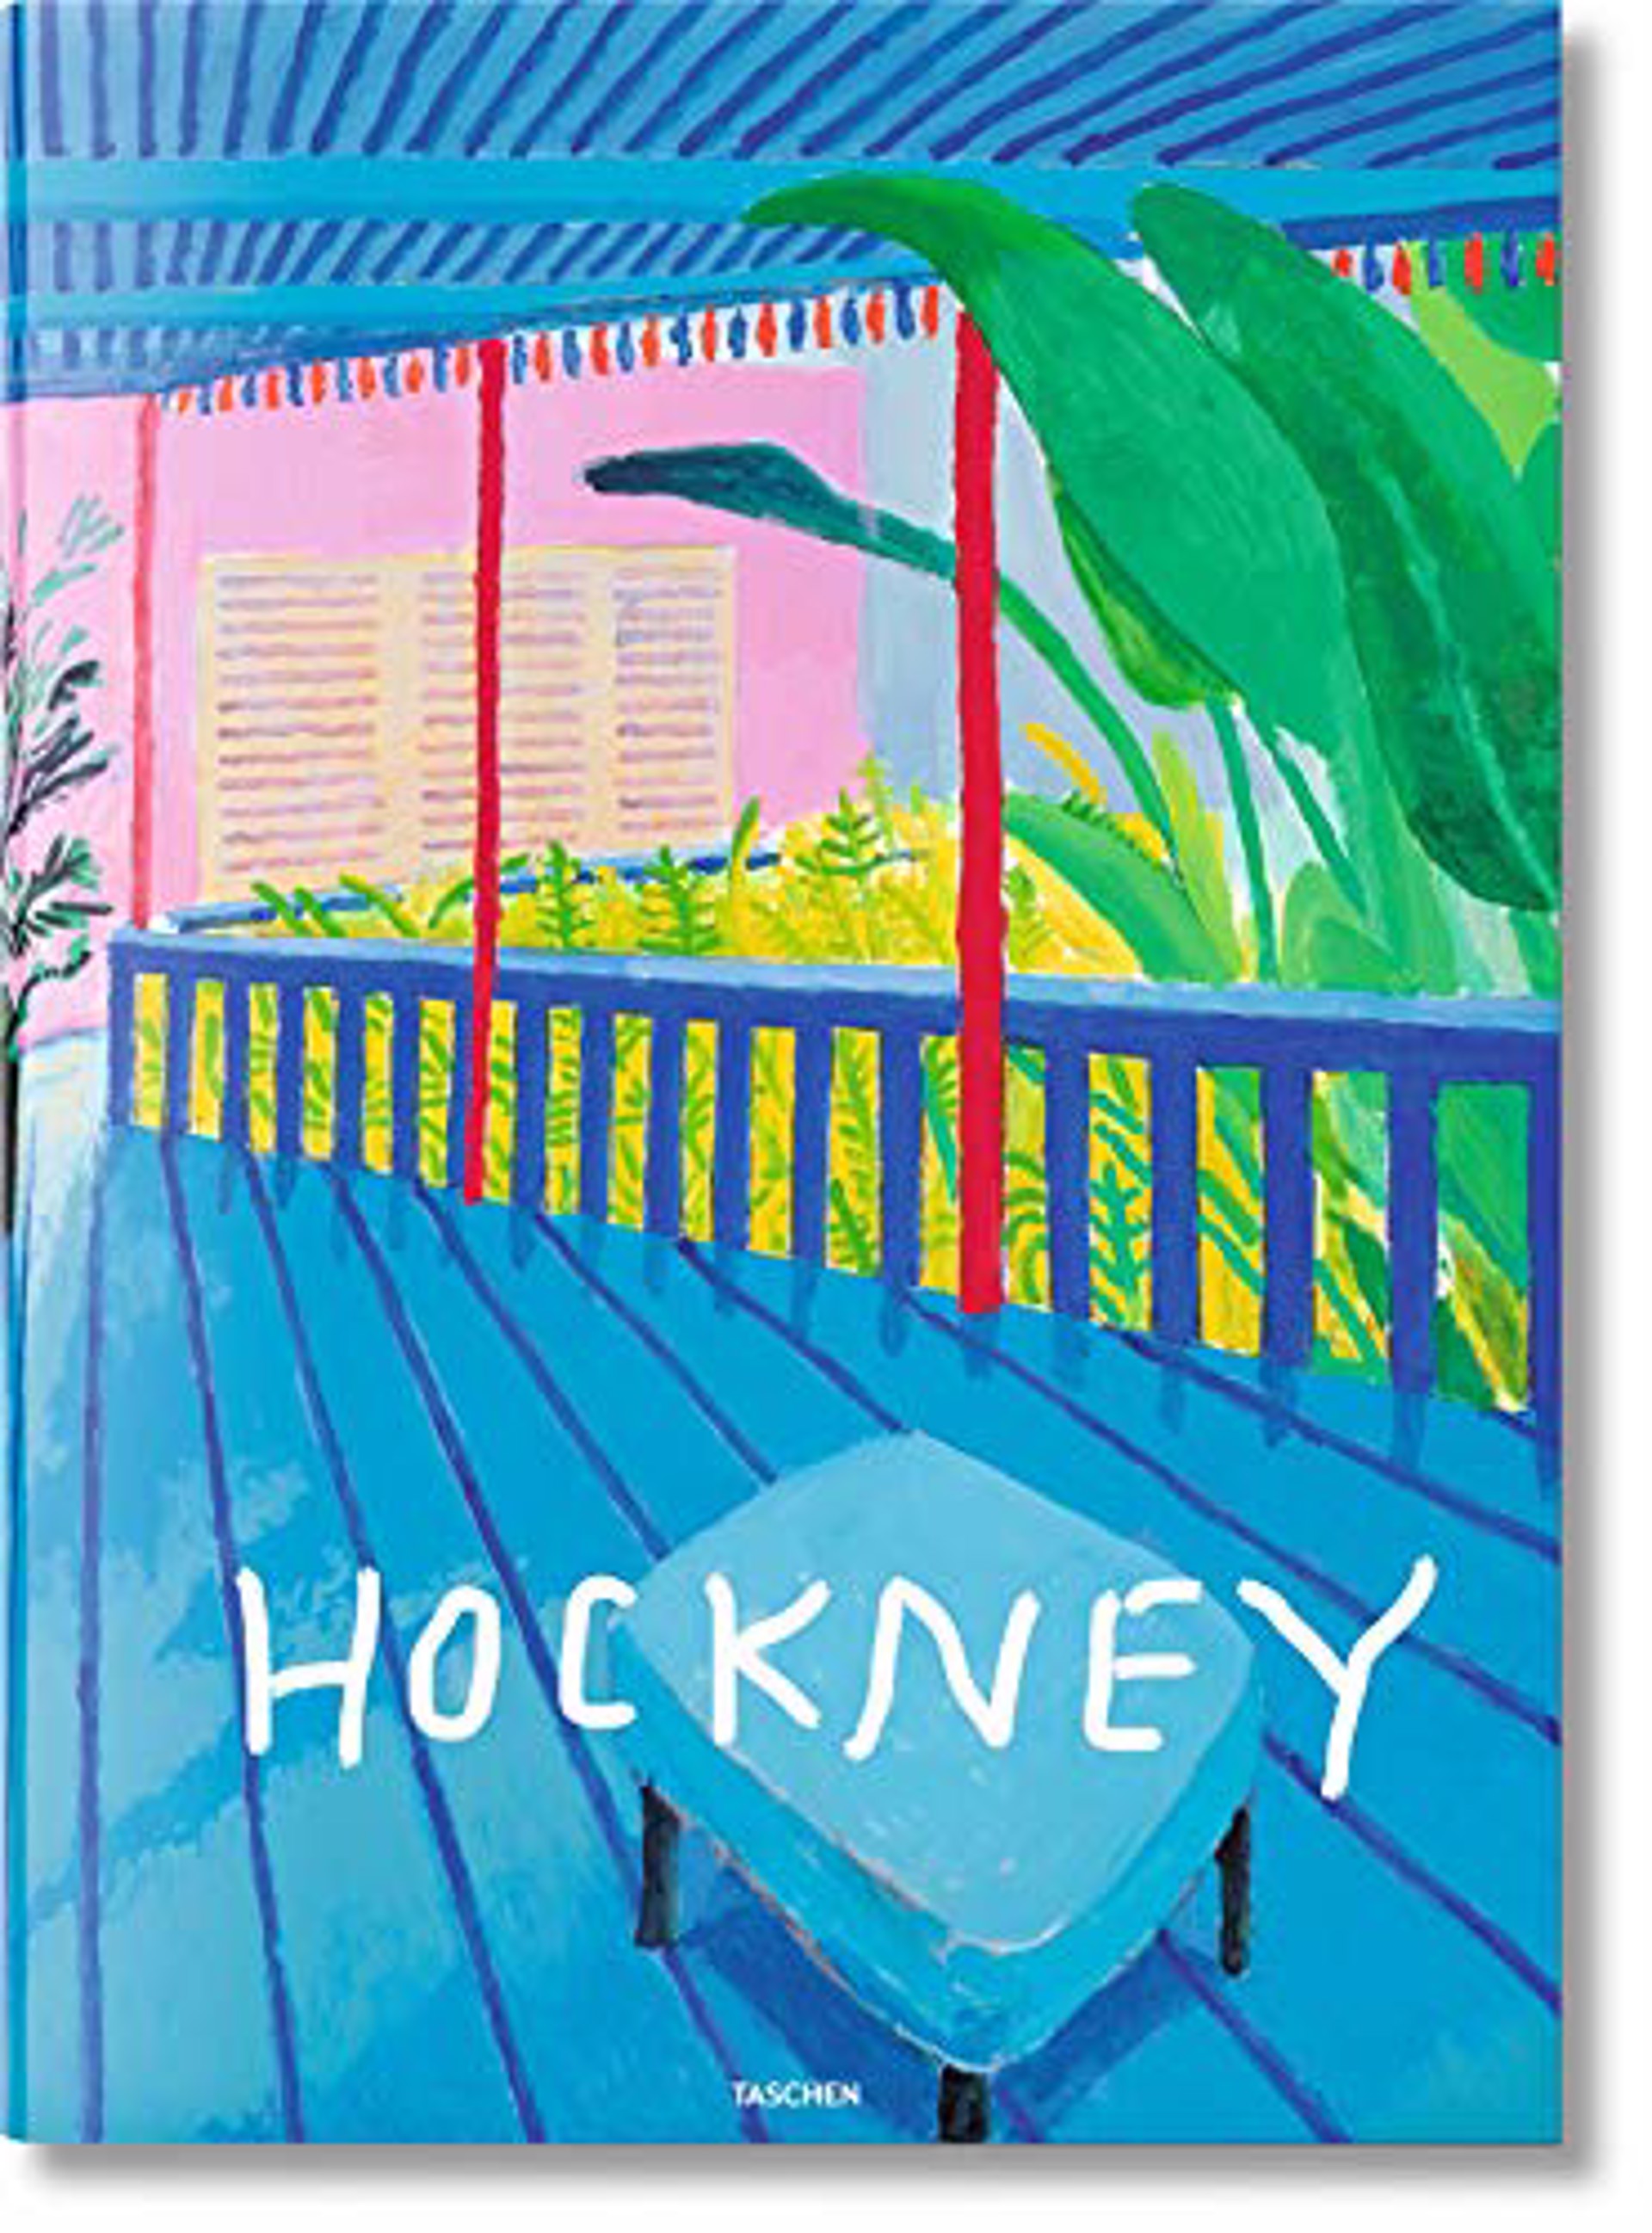 David Hockney: A Bigger Book by David Hockney